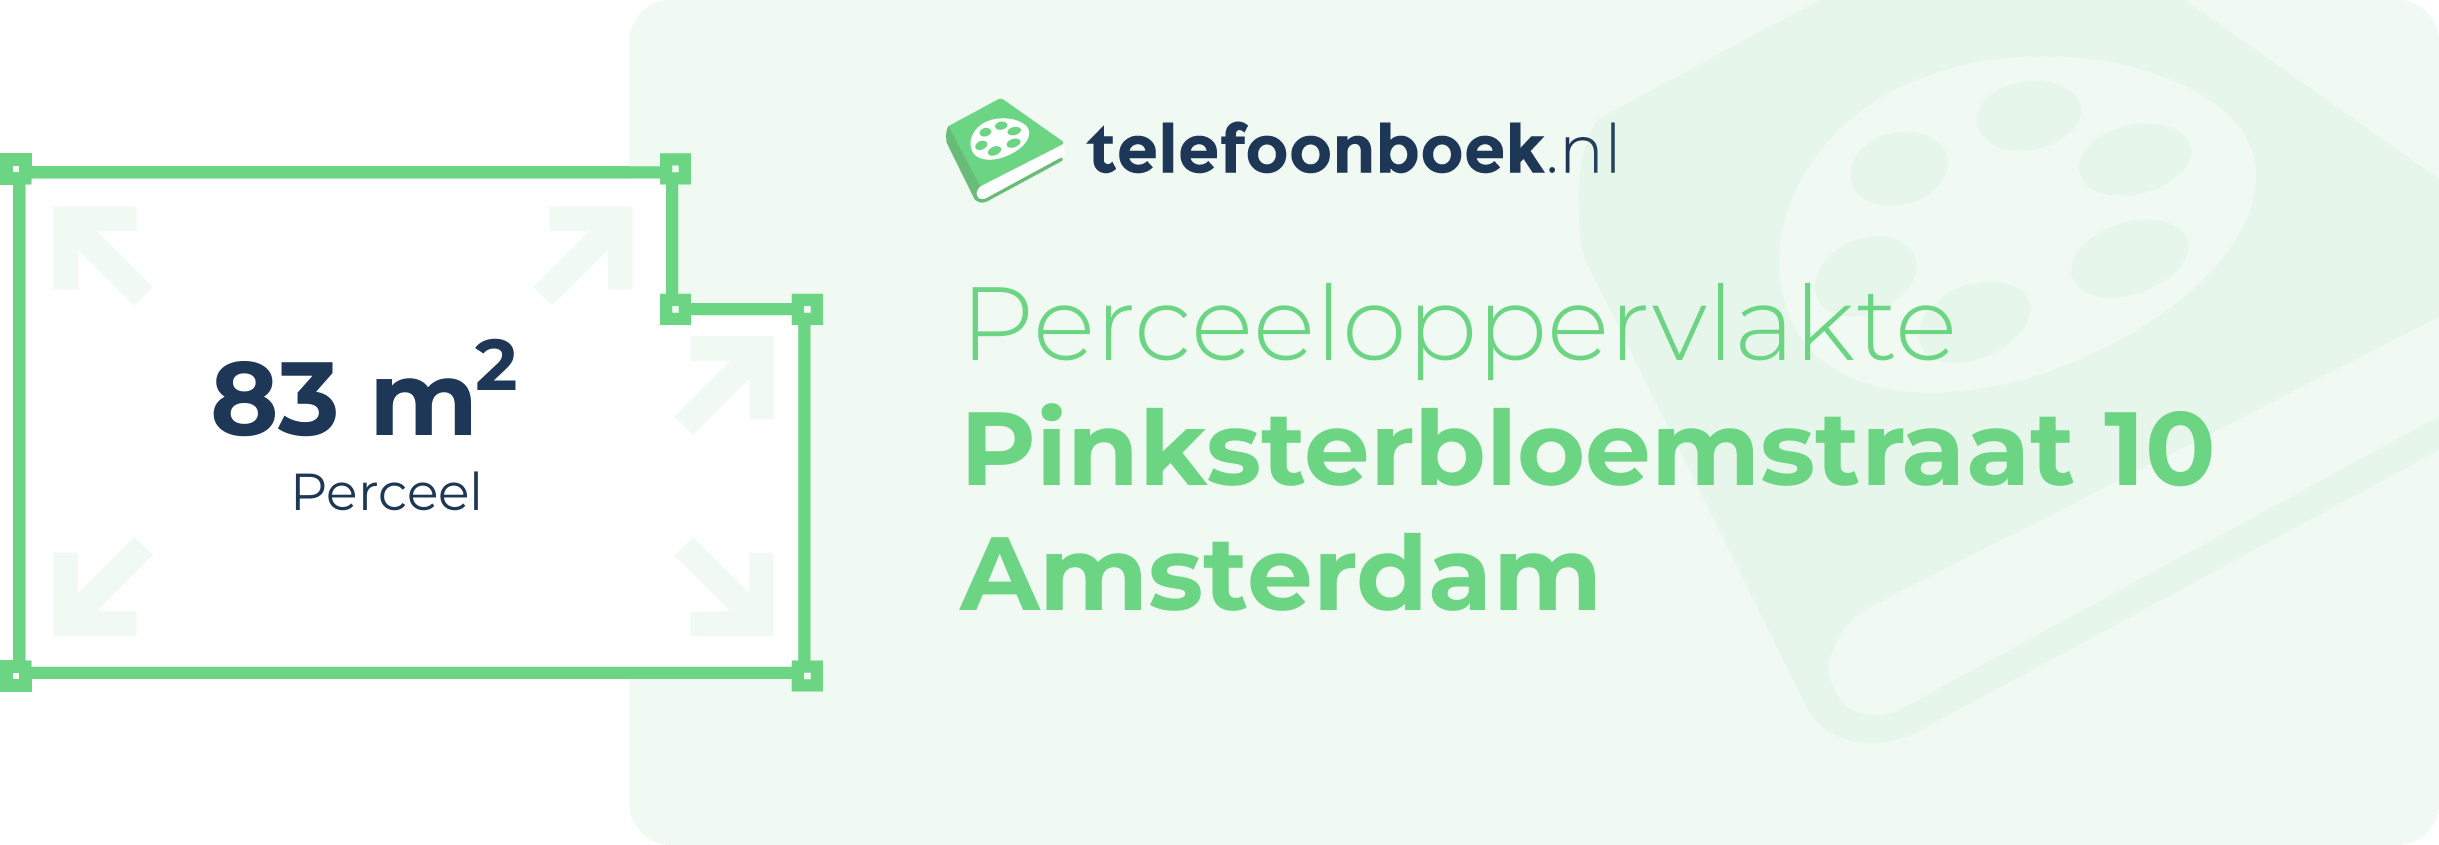 Perceeloppervlakte Pinksterbloemstraat 10 Amsterdam